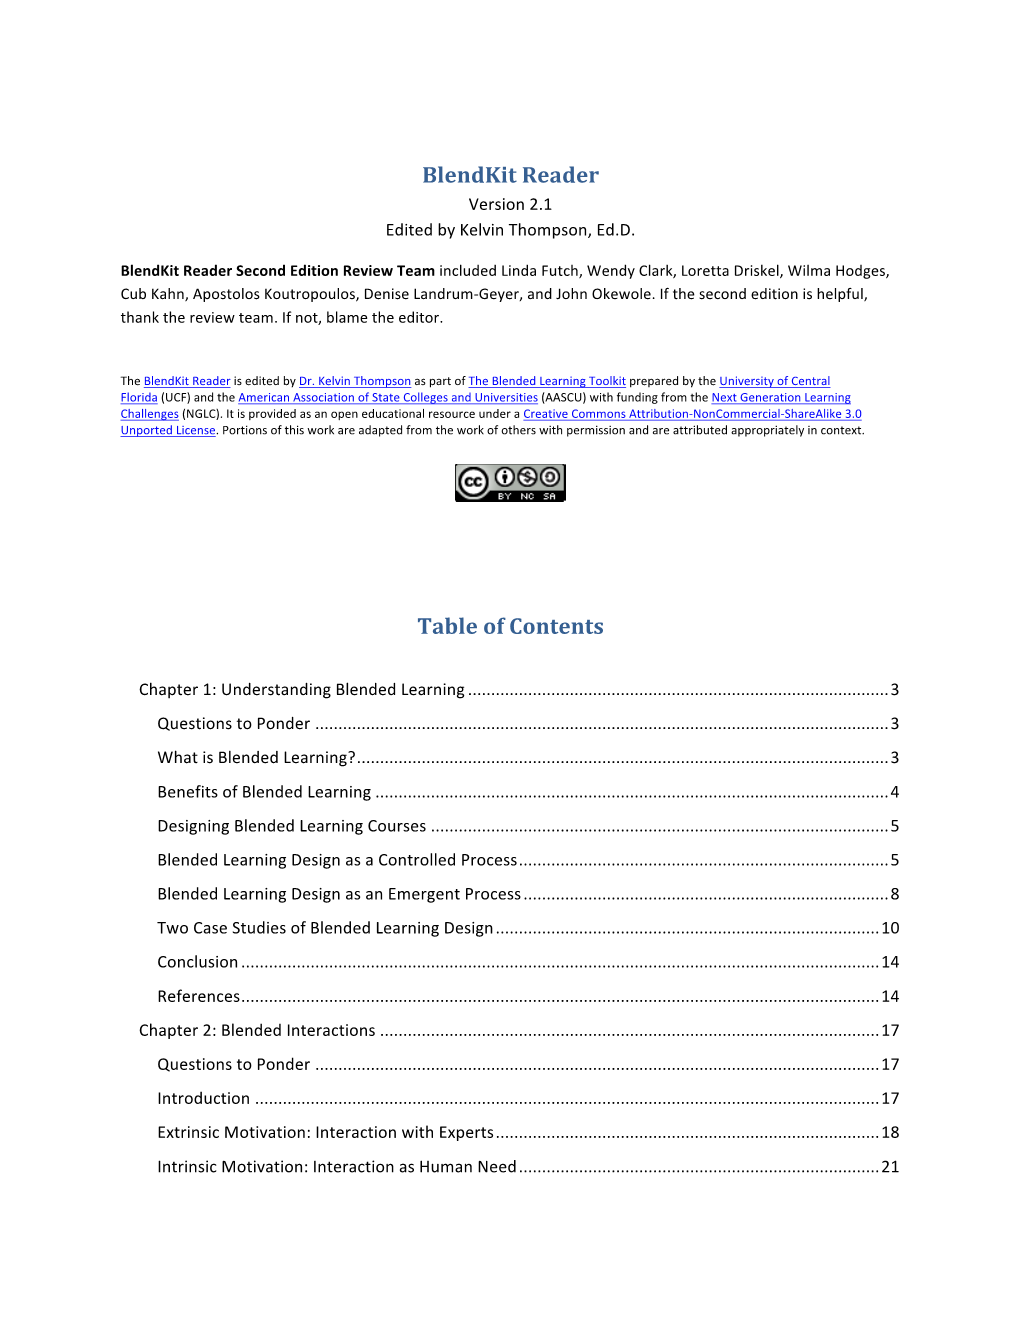 Blendkit Reader Version 2.1 Edited by Kelvin Thompson, Ed.D